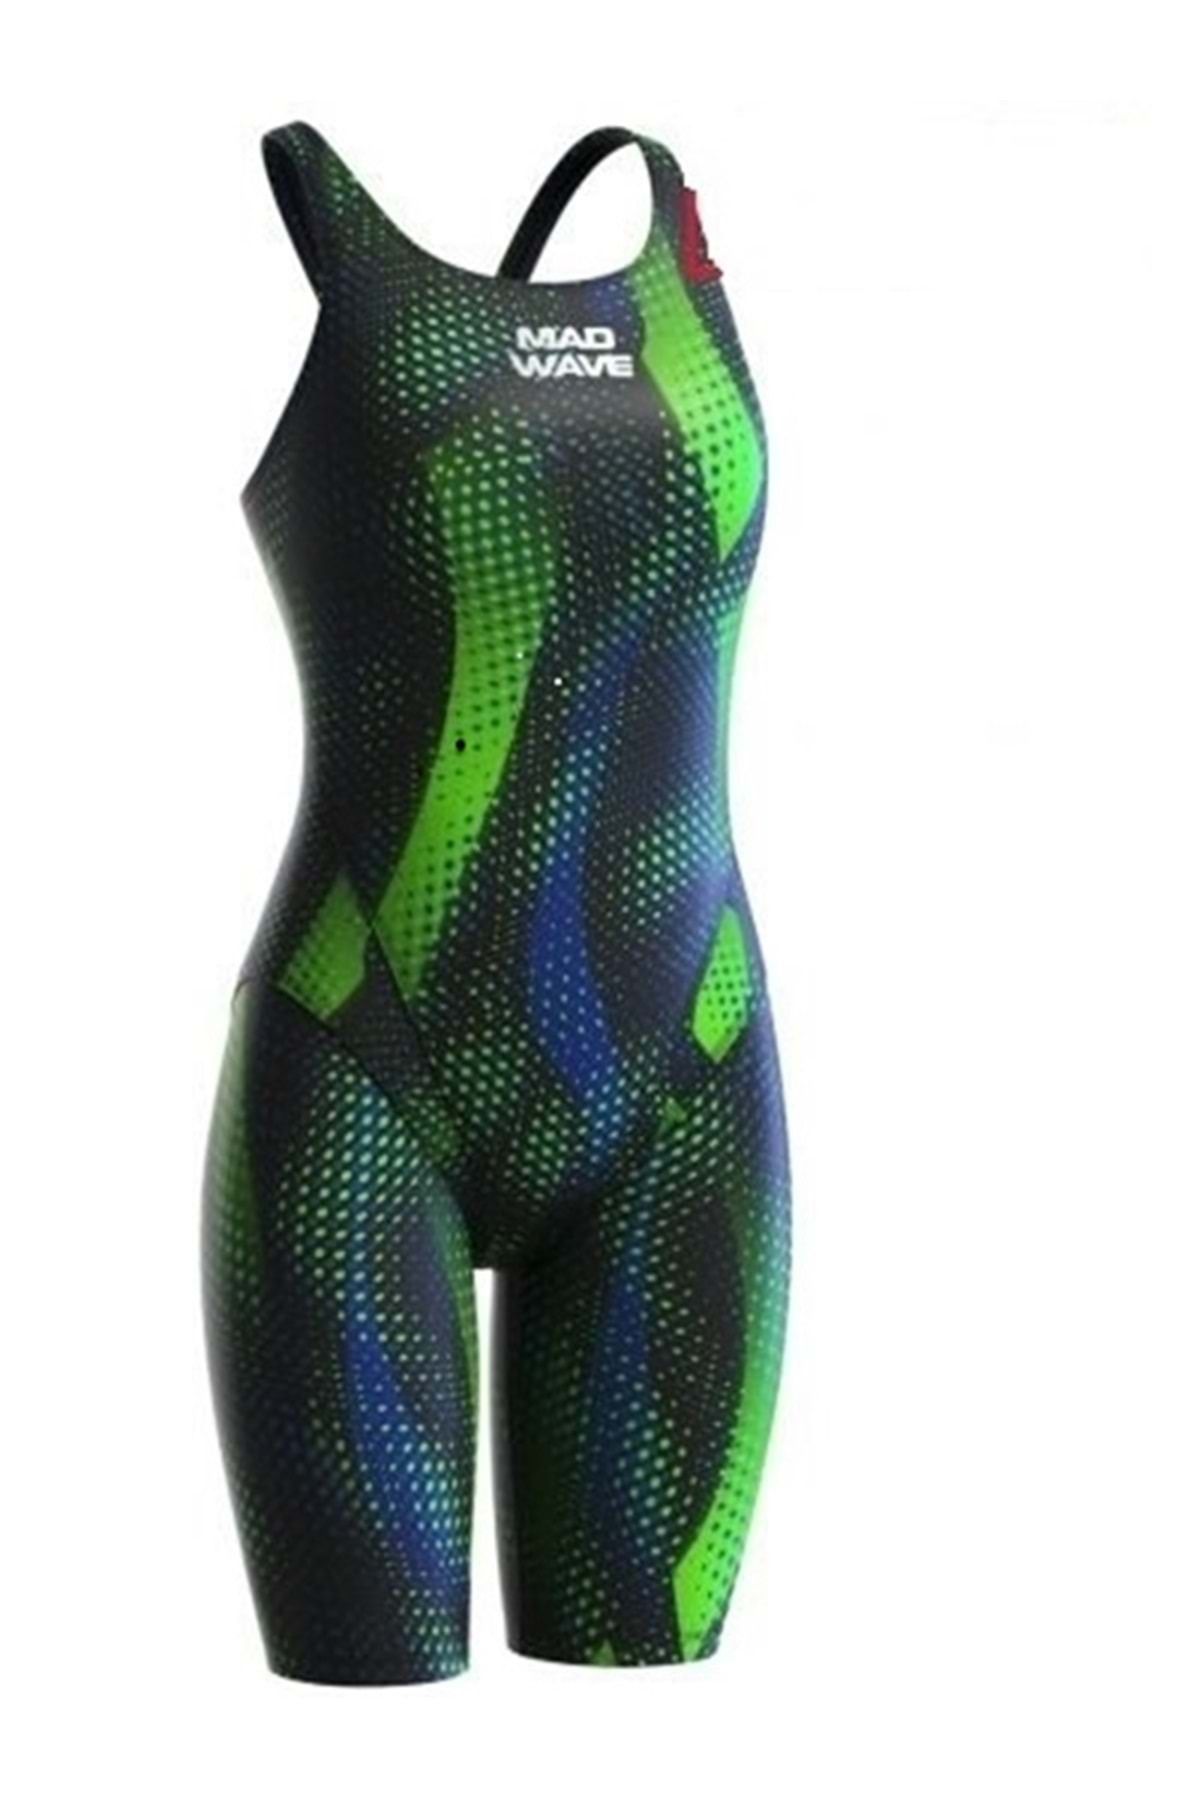 Mad Wave Kadın Yarış Mayosu Open Back Swimsuit Bod - Yeşil - Xxs/uk22/12-13 Yaş